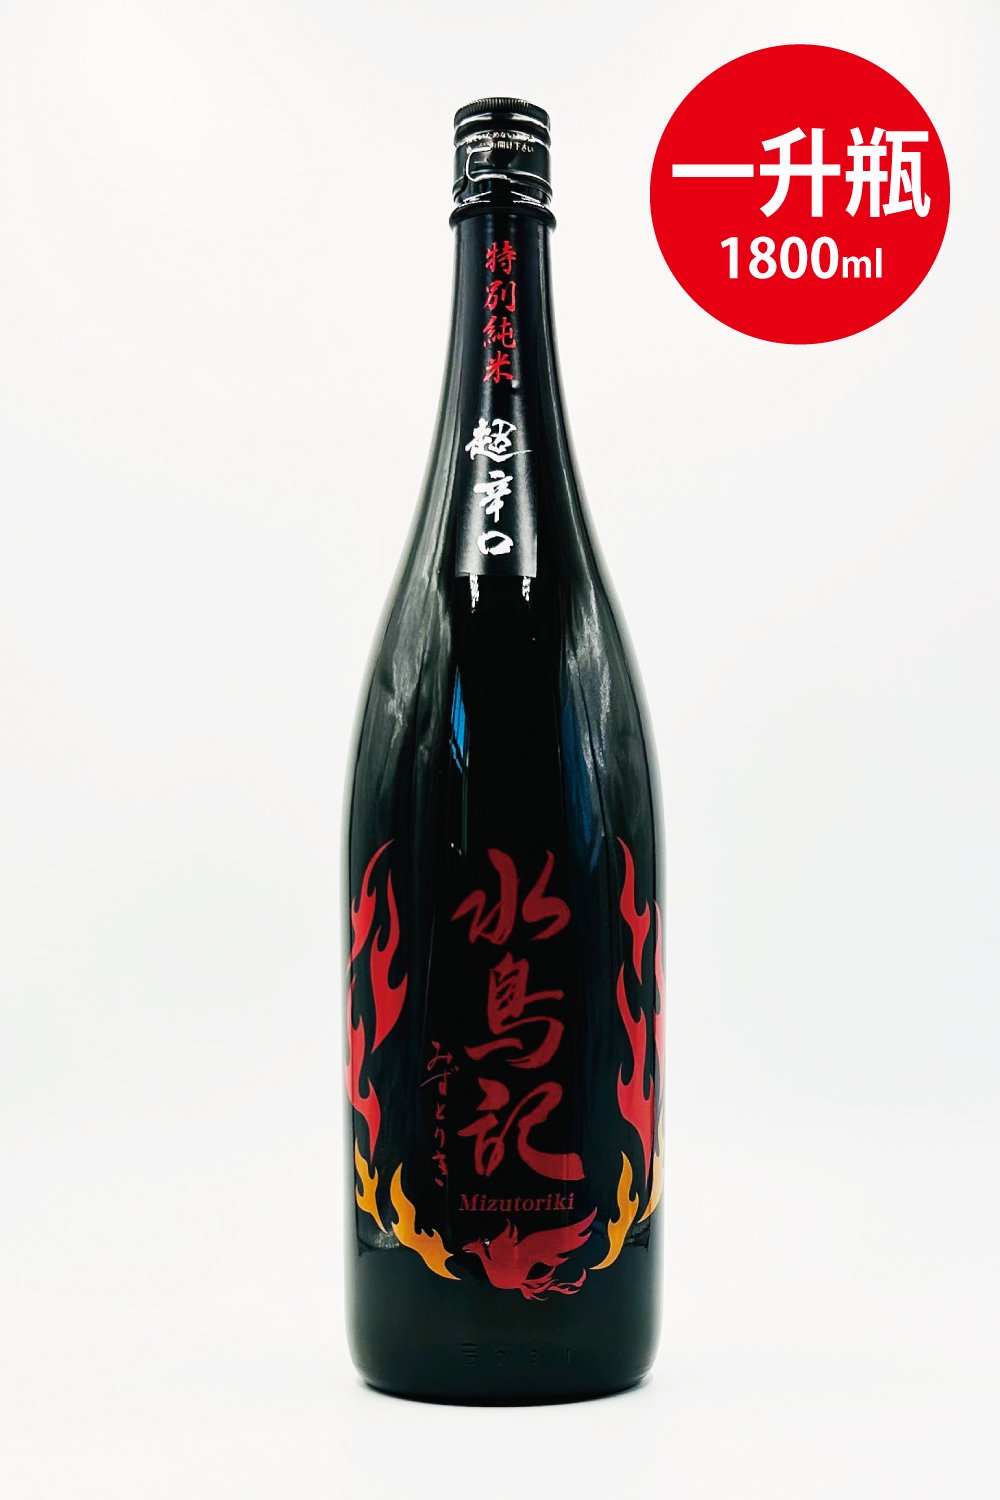 一升瓶 1800ml - 気仙沼の日本酒 蔵元直営店 - 角星オンラインショップ